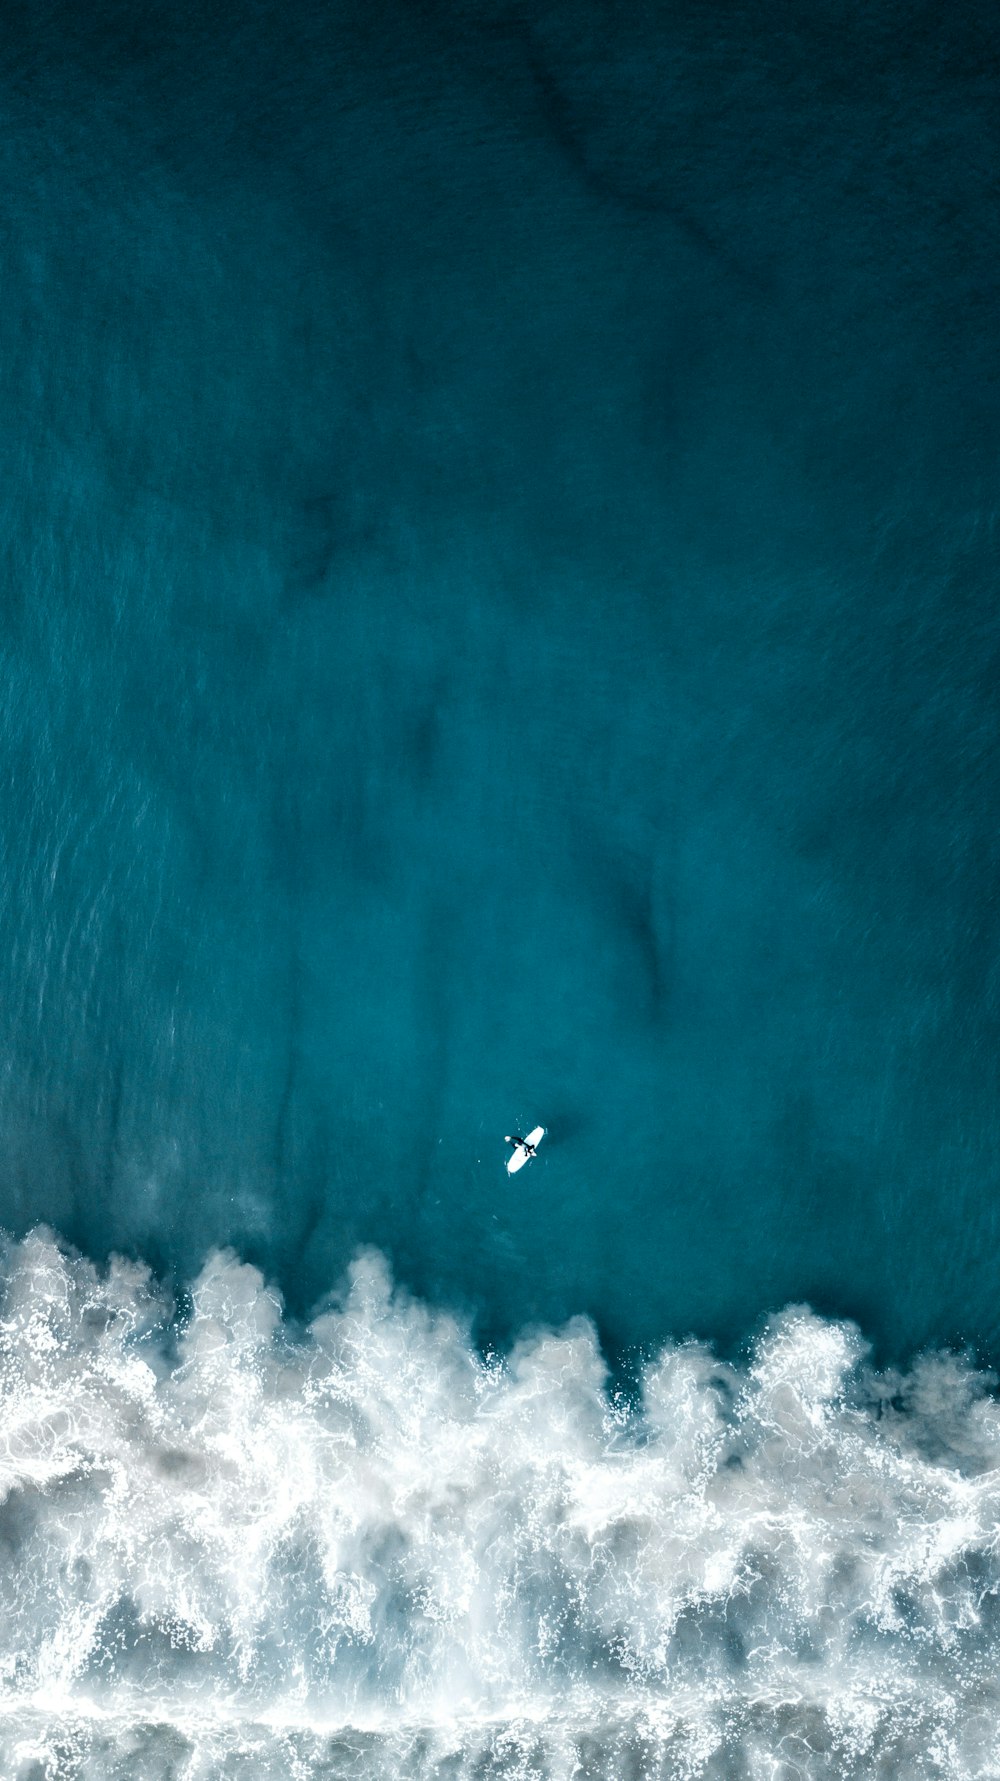 Una vista aérea de un surfista montando una ola